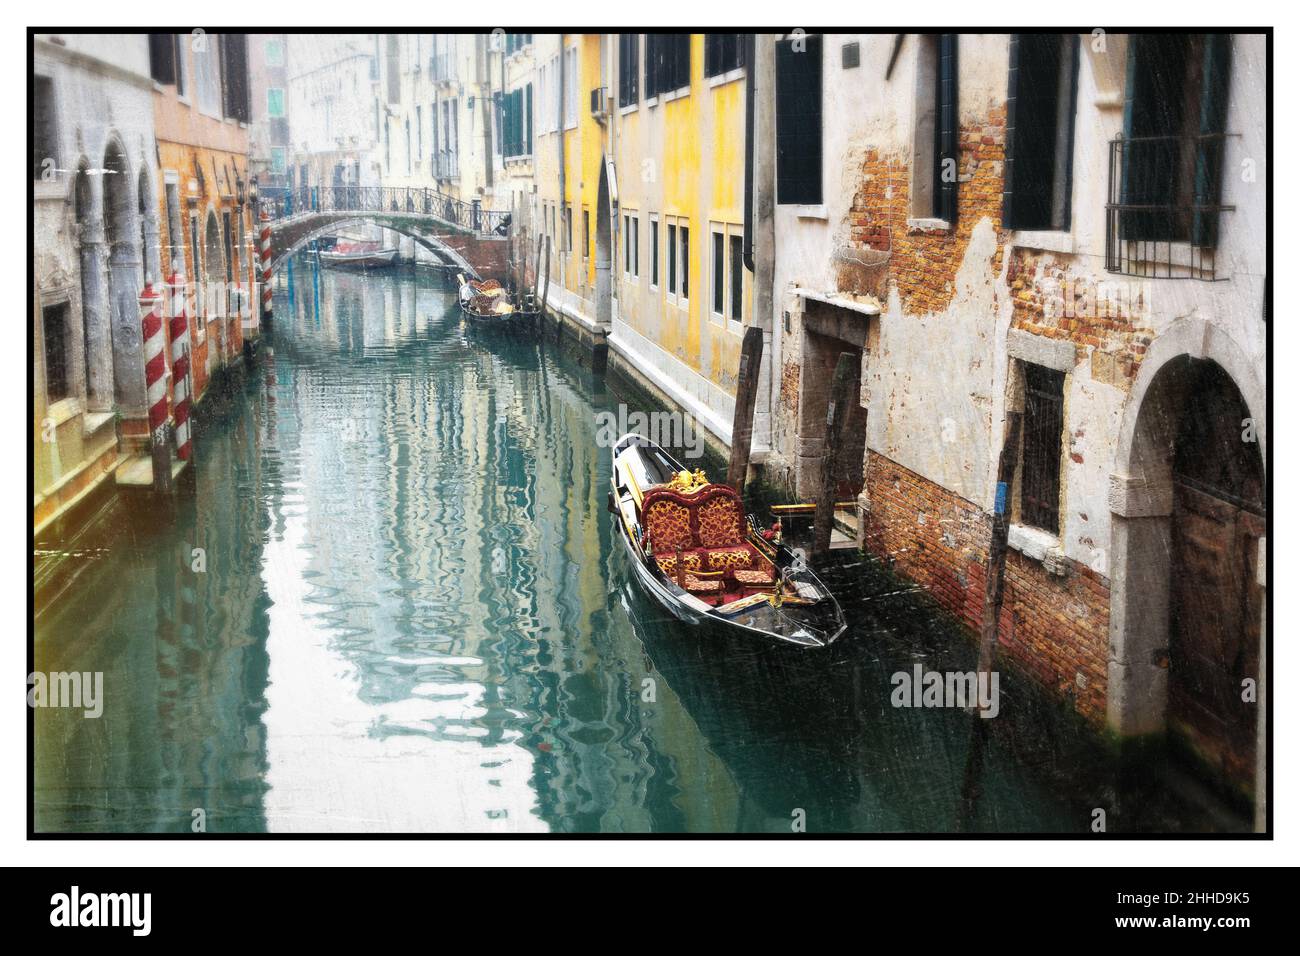 Romantique canaux vénitiens.Vieilles rues étroites de Venise.Photo rétro aux tons sépia.Italie Banque D'Images